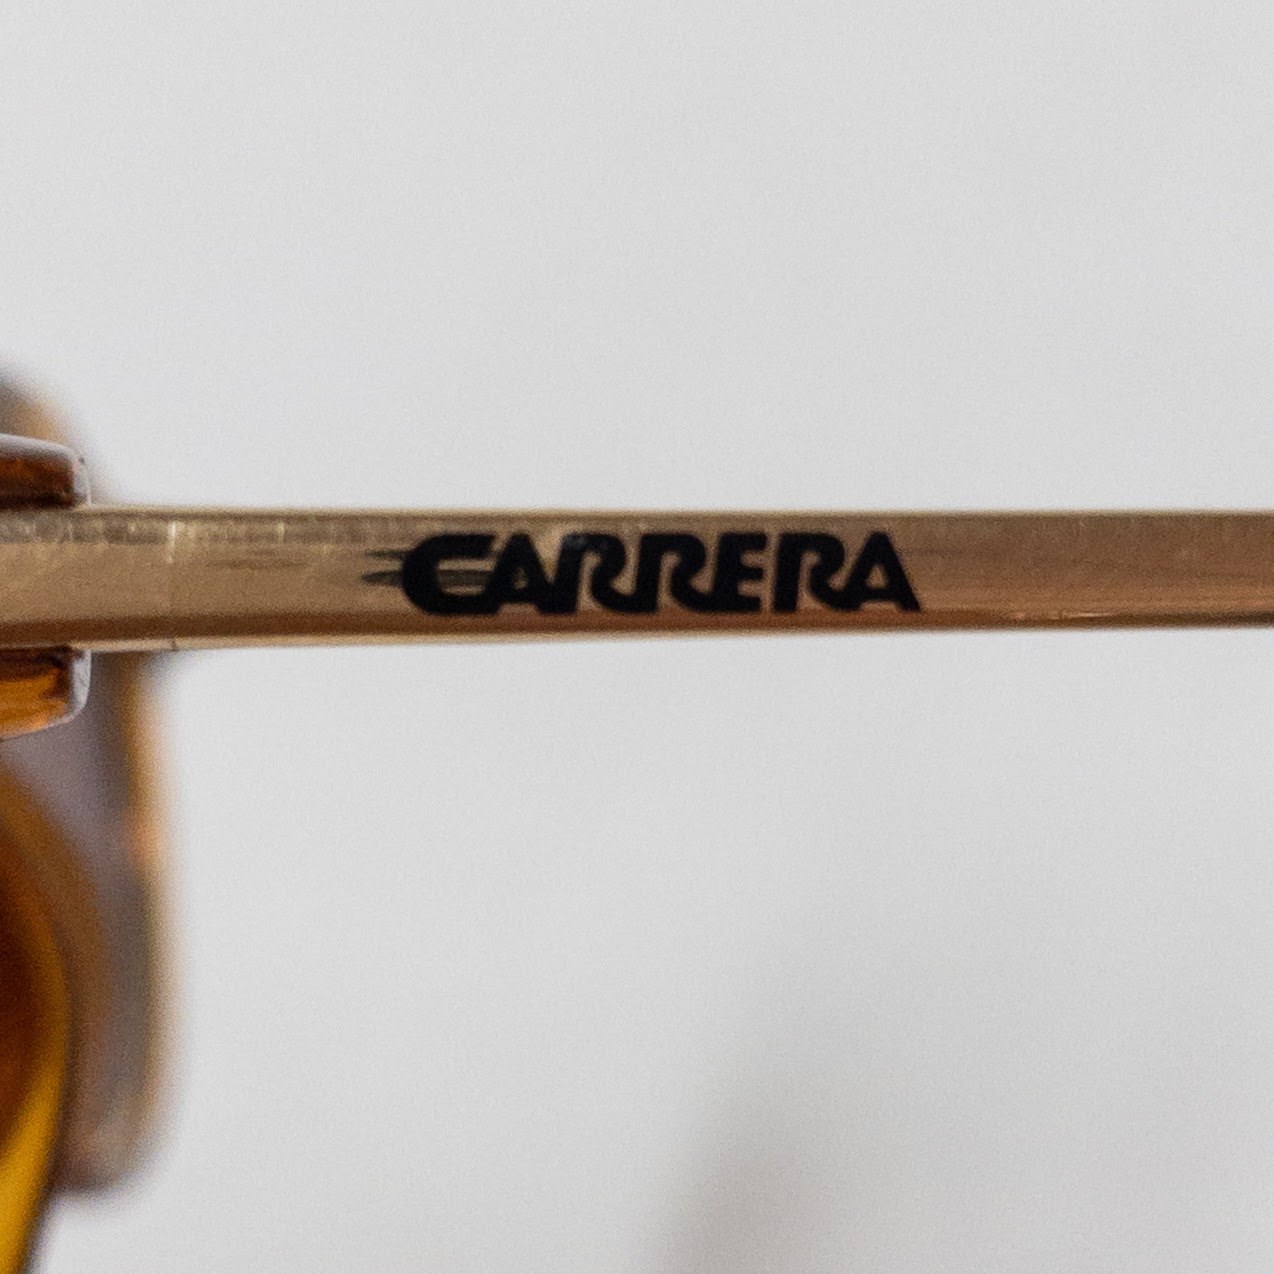 Carrera Vintage 'Tortoise' Sunglasses